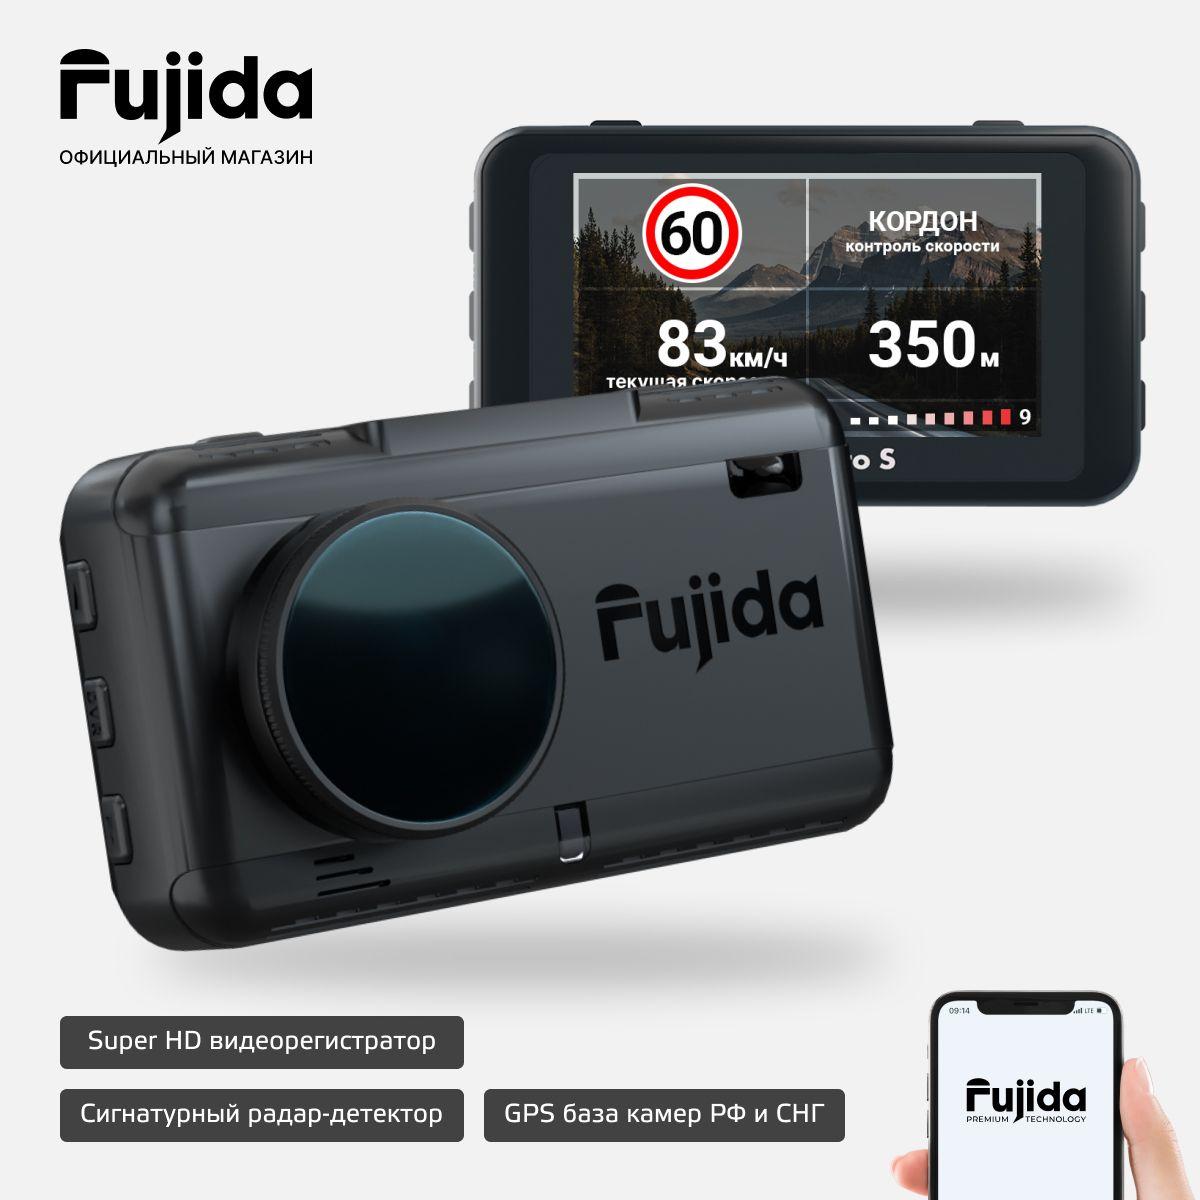 Fujida | Видеорегистратор Fujida Karma Pro S WiFi SuperHD с CPL-антибликовым фильтром, сигнатурным радар-детектором, GPS-информатором, распознаванием дорожных знаков и WiFi-модулем